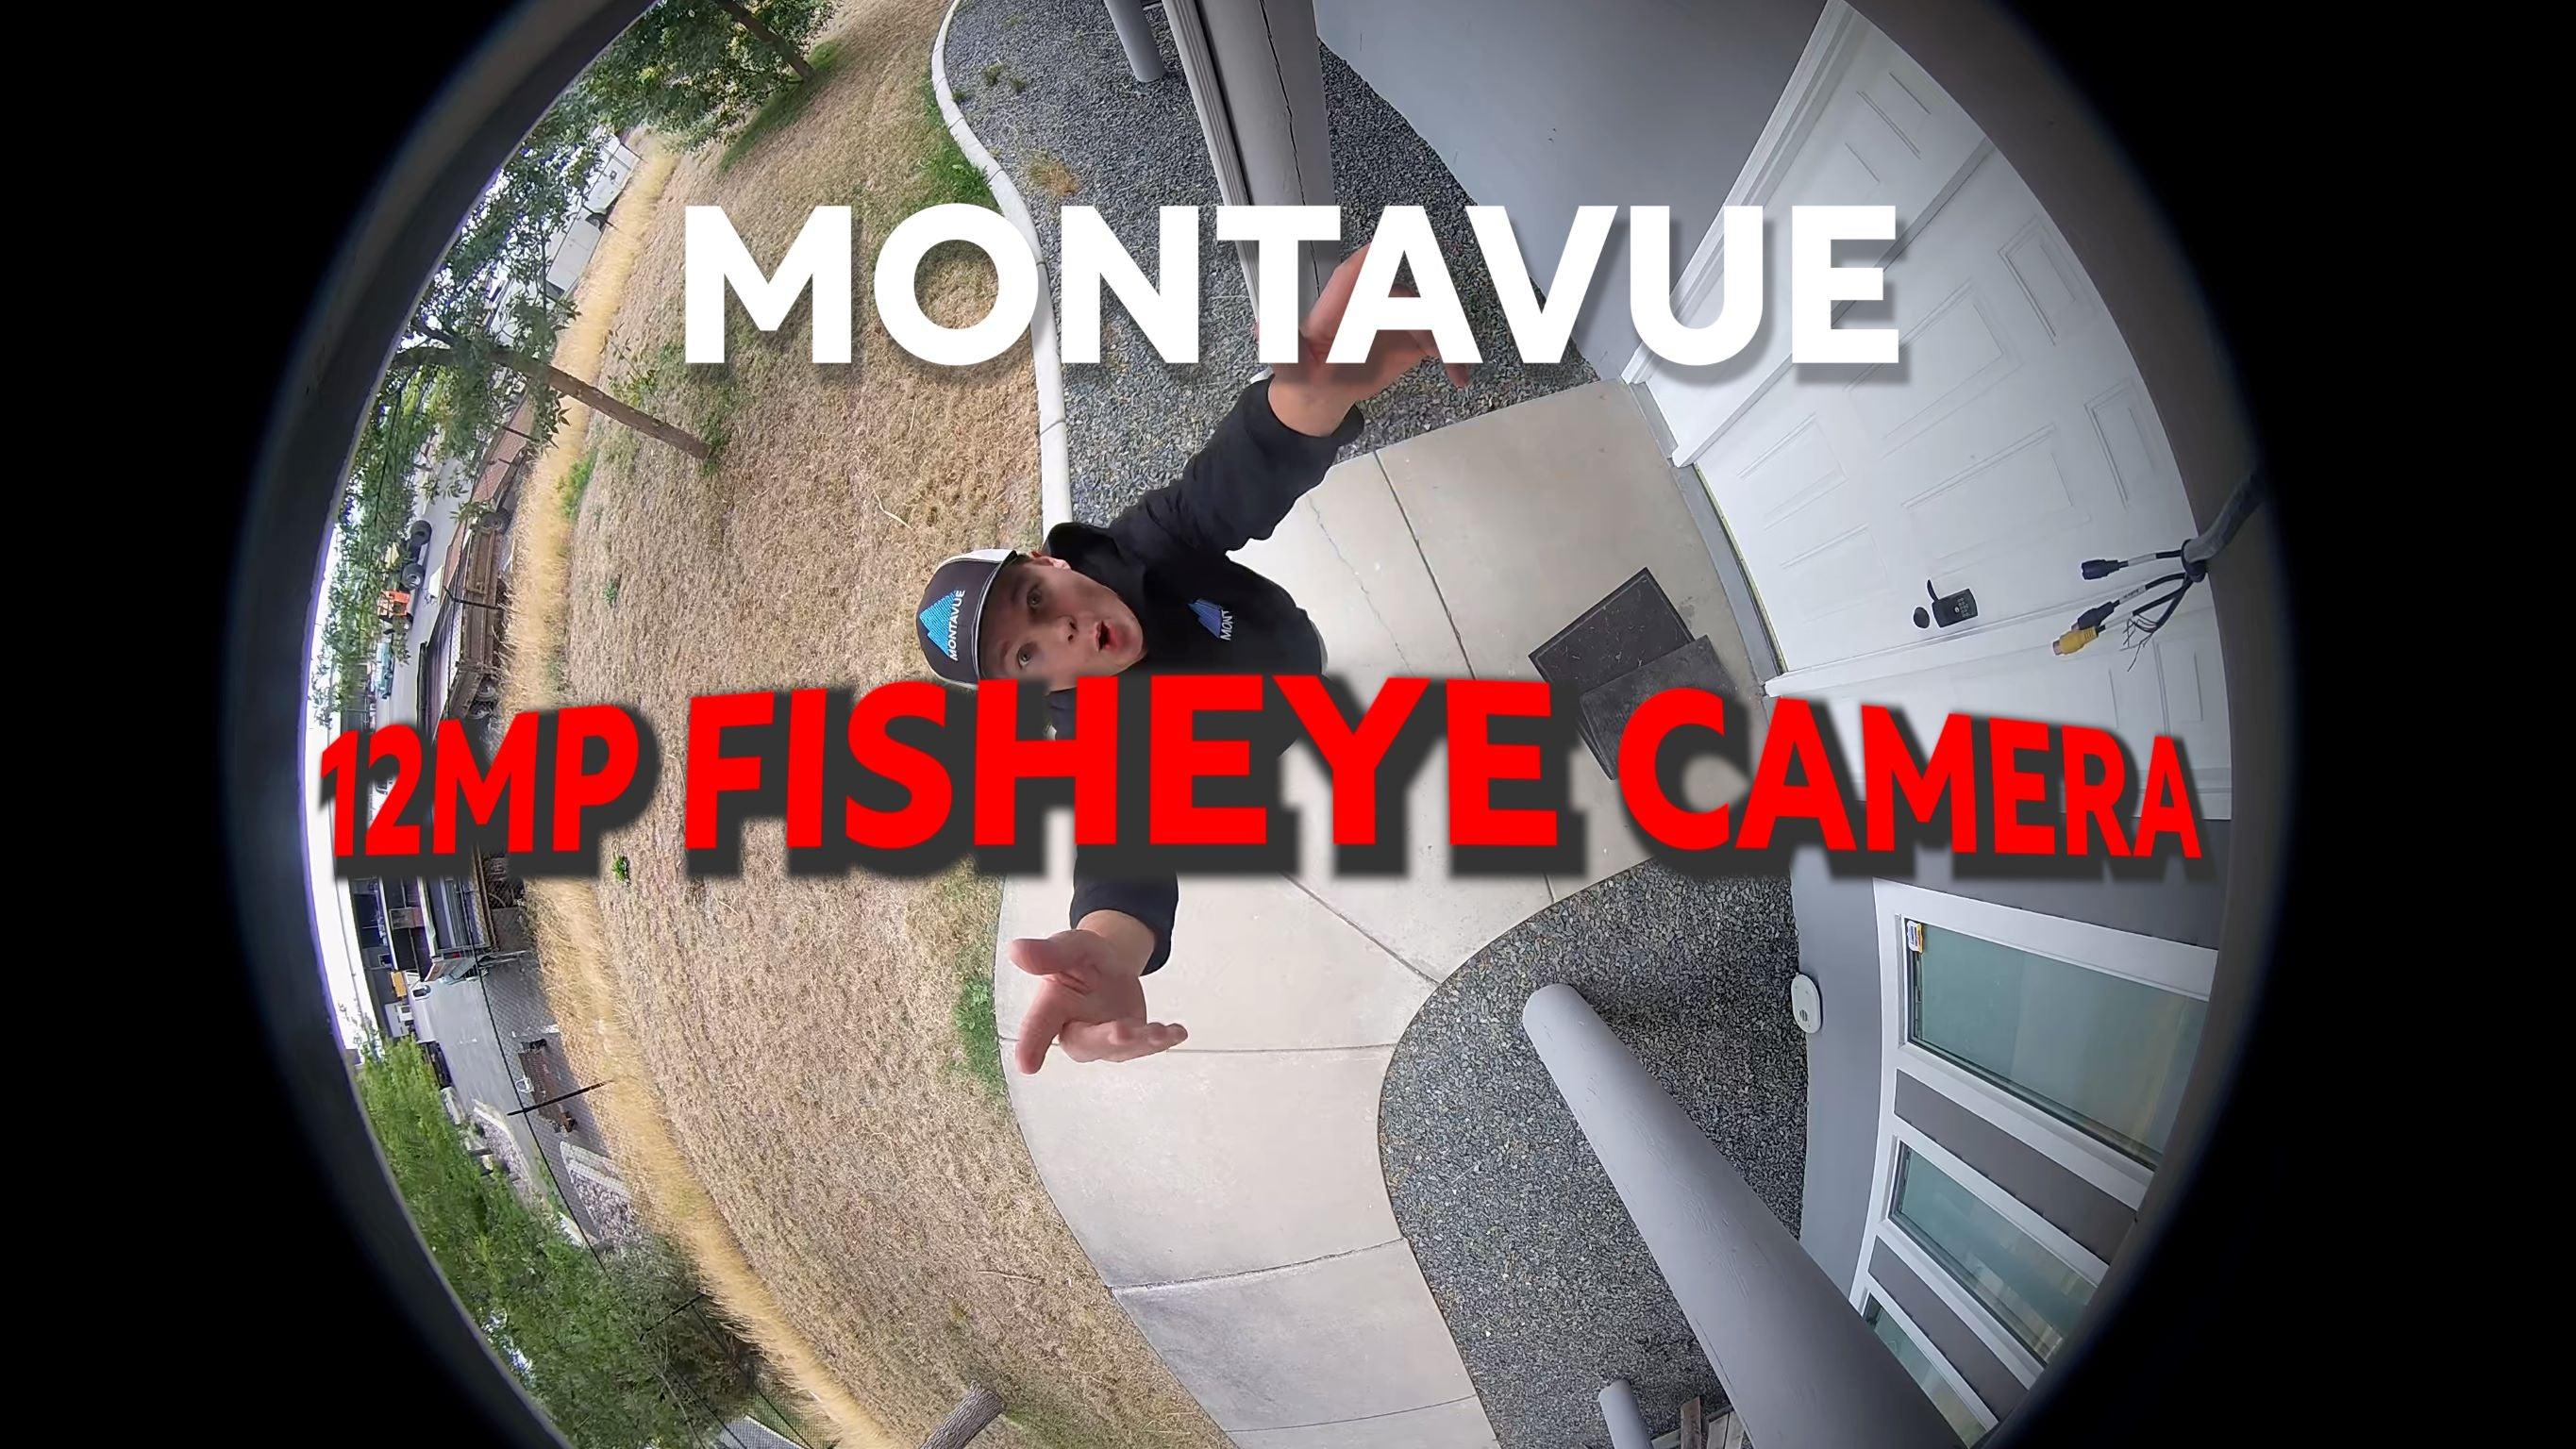 Montavue 12MP Fisheye Camera - Montavue